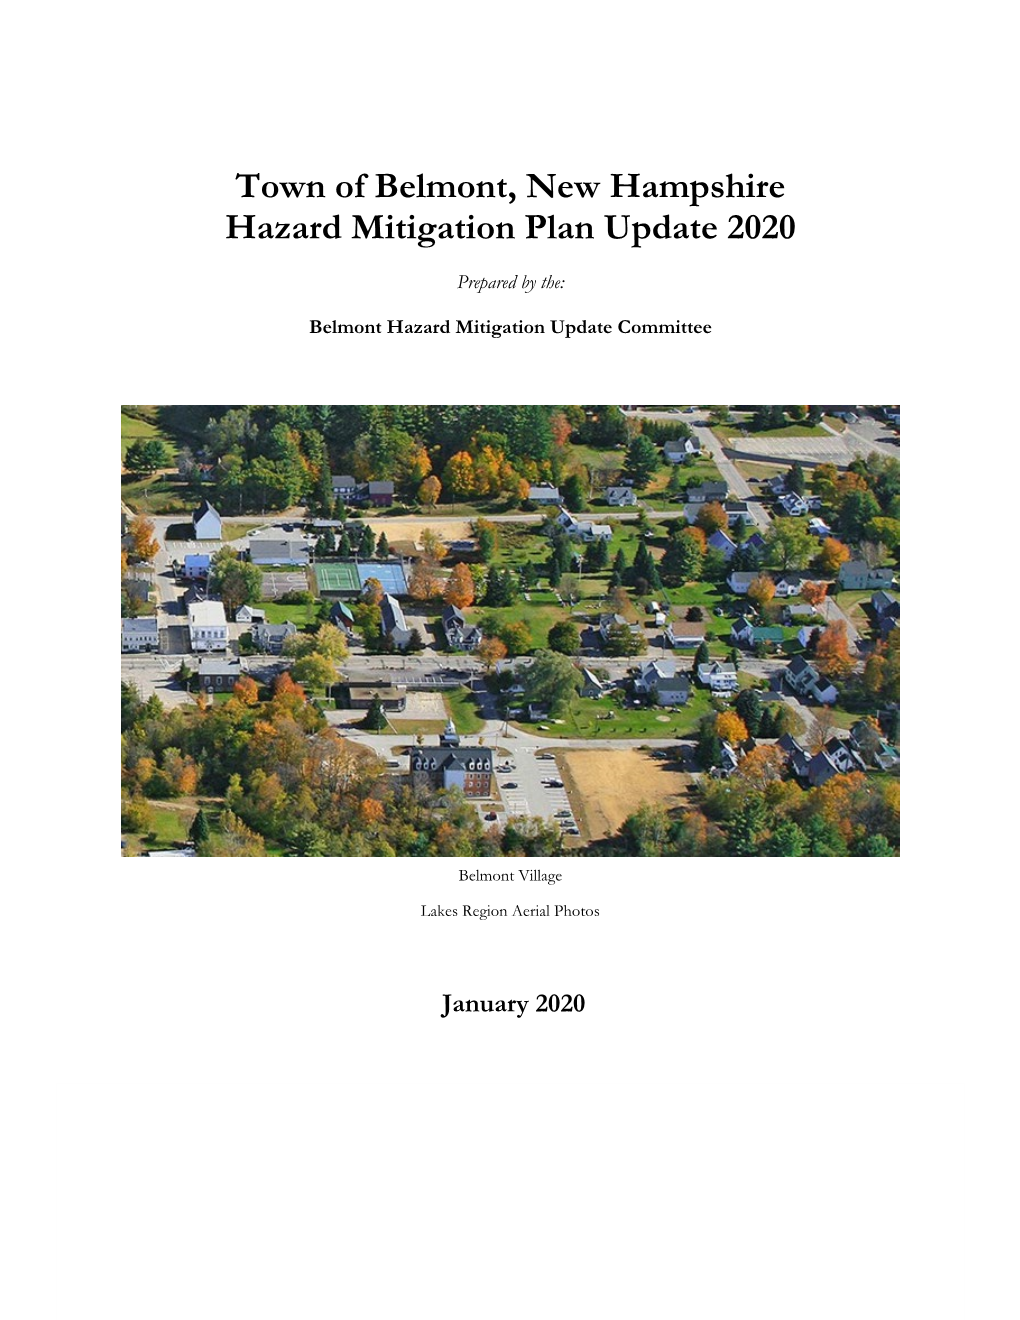 Town of Belmont, New Hampshire Hazard Mitigation Plan Update 2020